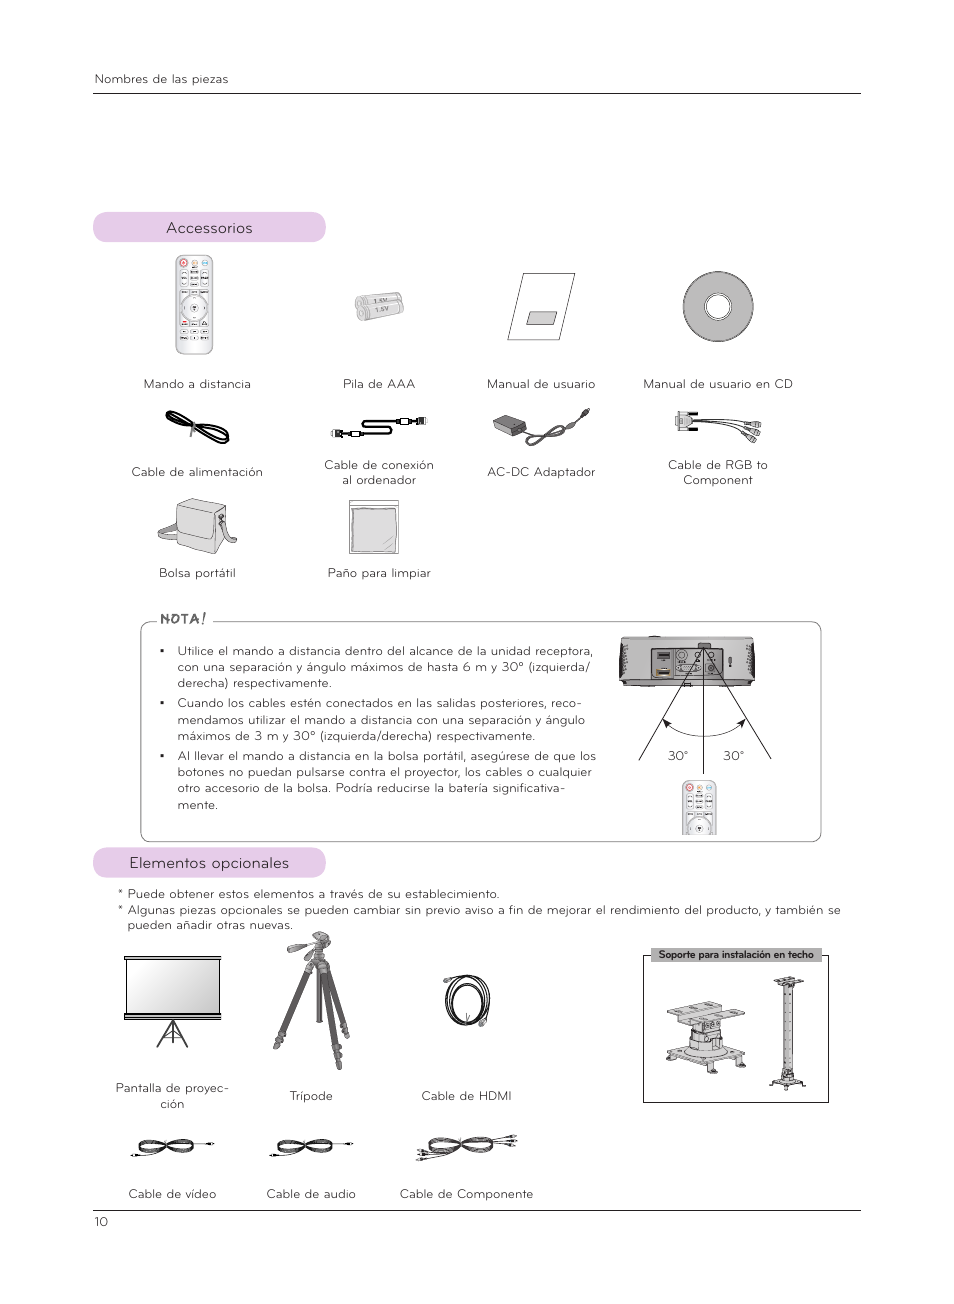 Accessorios, Elementos opcionales | LG HX300G Manual del usuario | Página 10 / 44